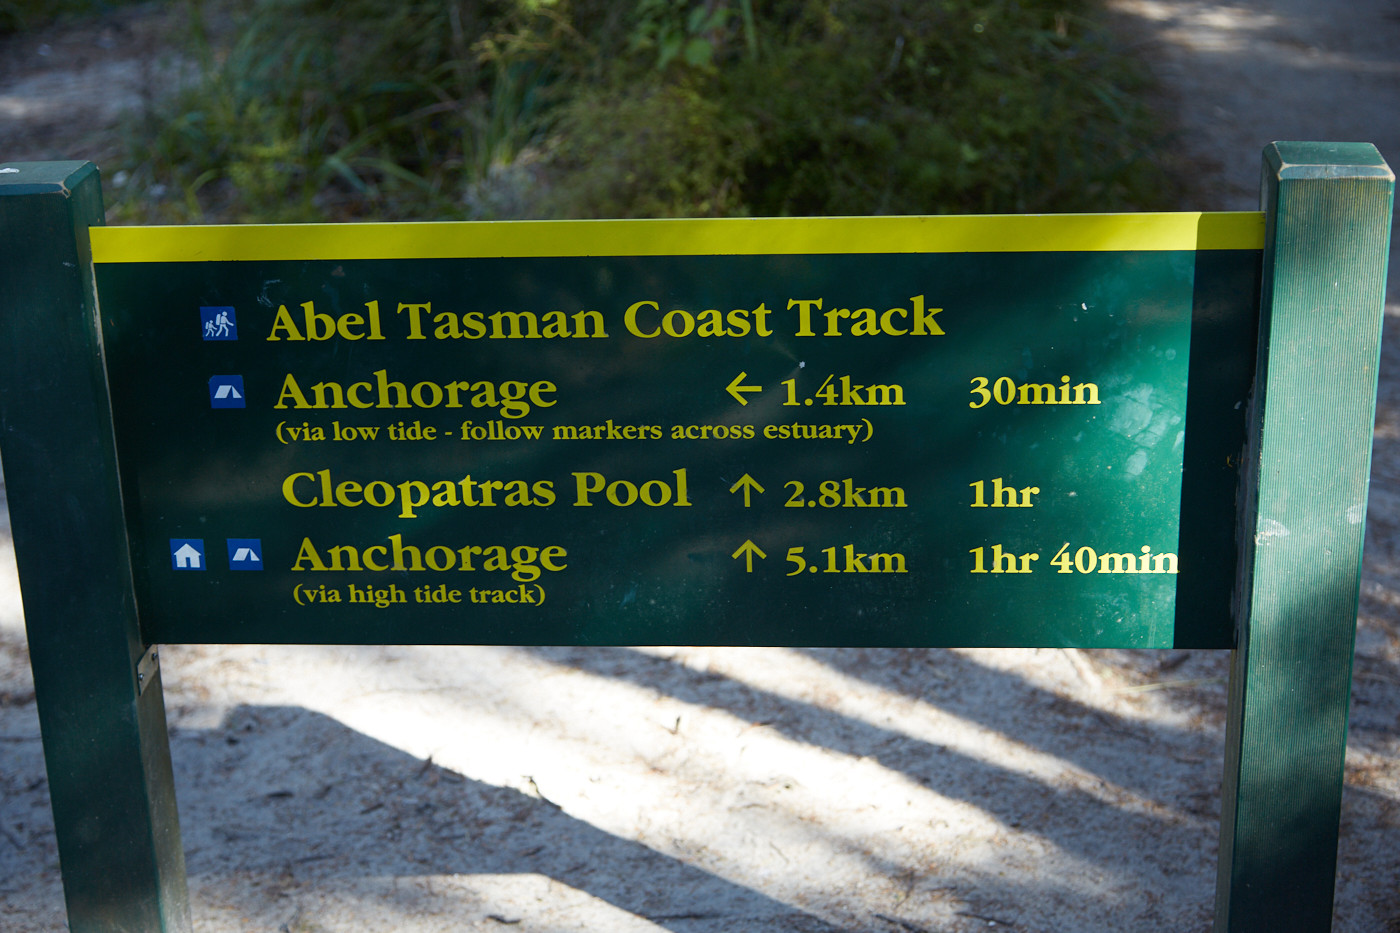 Das Schild bei der Wanderung im Abel Tasman Nationalpark, der Wanderweg ist bei Flut um einiges länger als bei Ebbe! Dies gilt bei der Planung der Wanderung zu beachten.